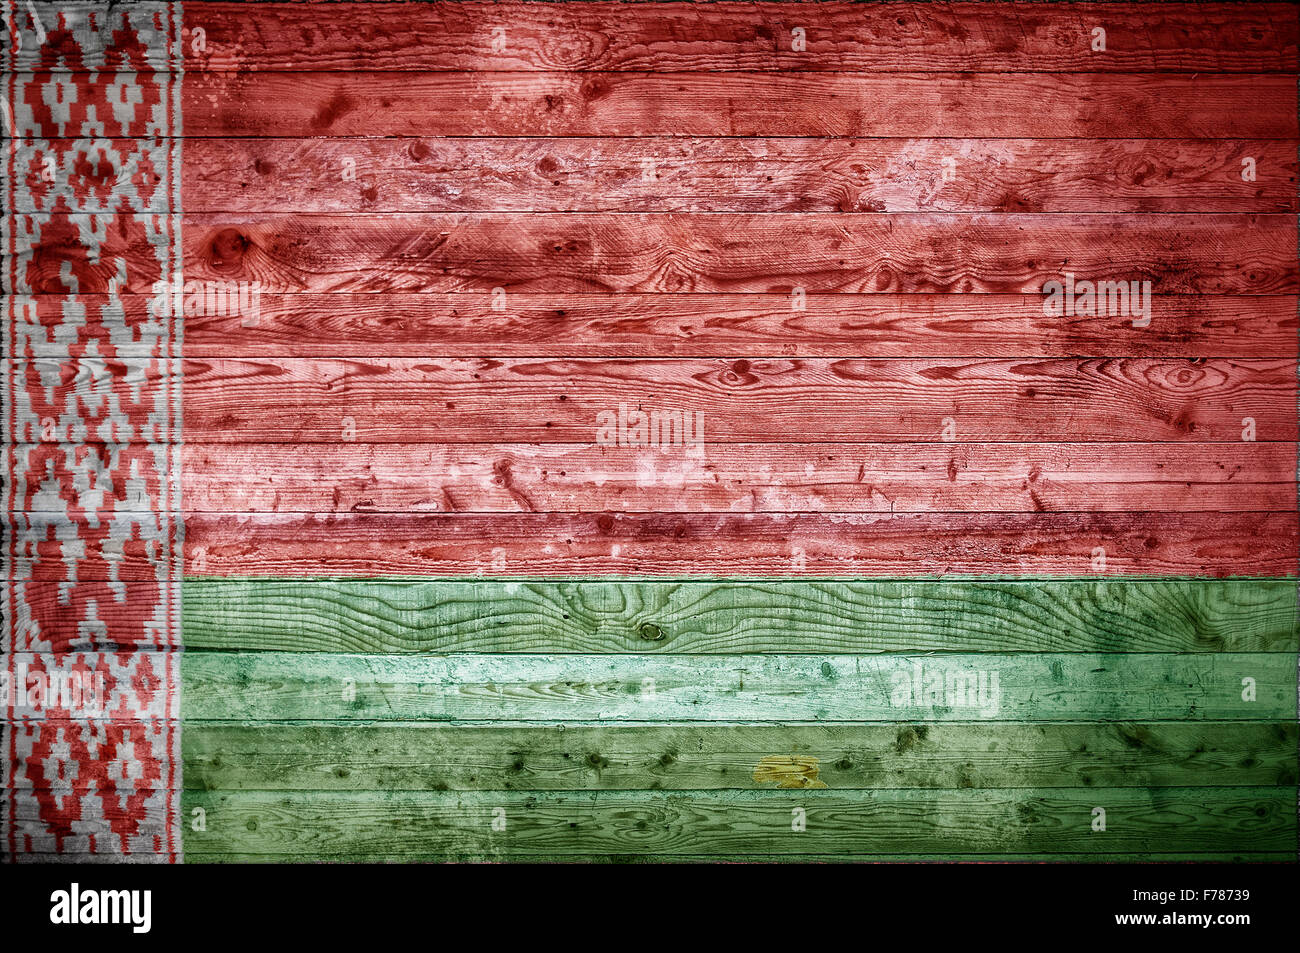 Une vignetted image de fond du drapeau de la Biélorussie peints sur des planches de bois d'un mur ou le plancher. Banque D'Images